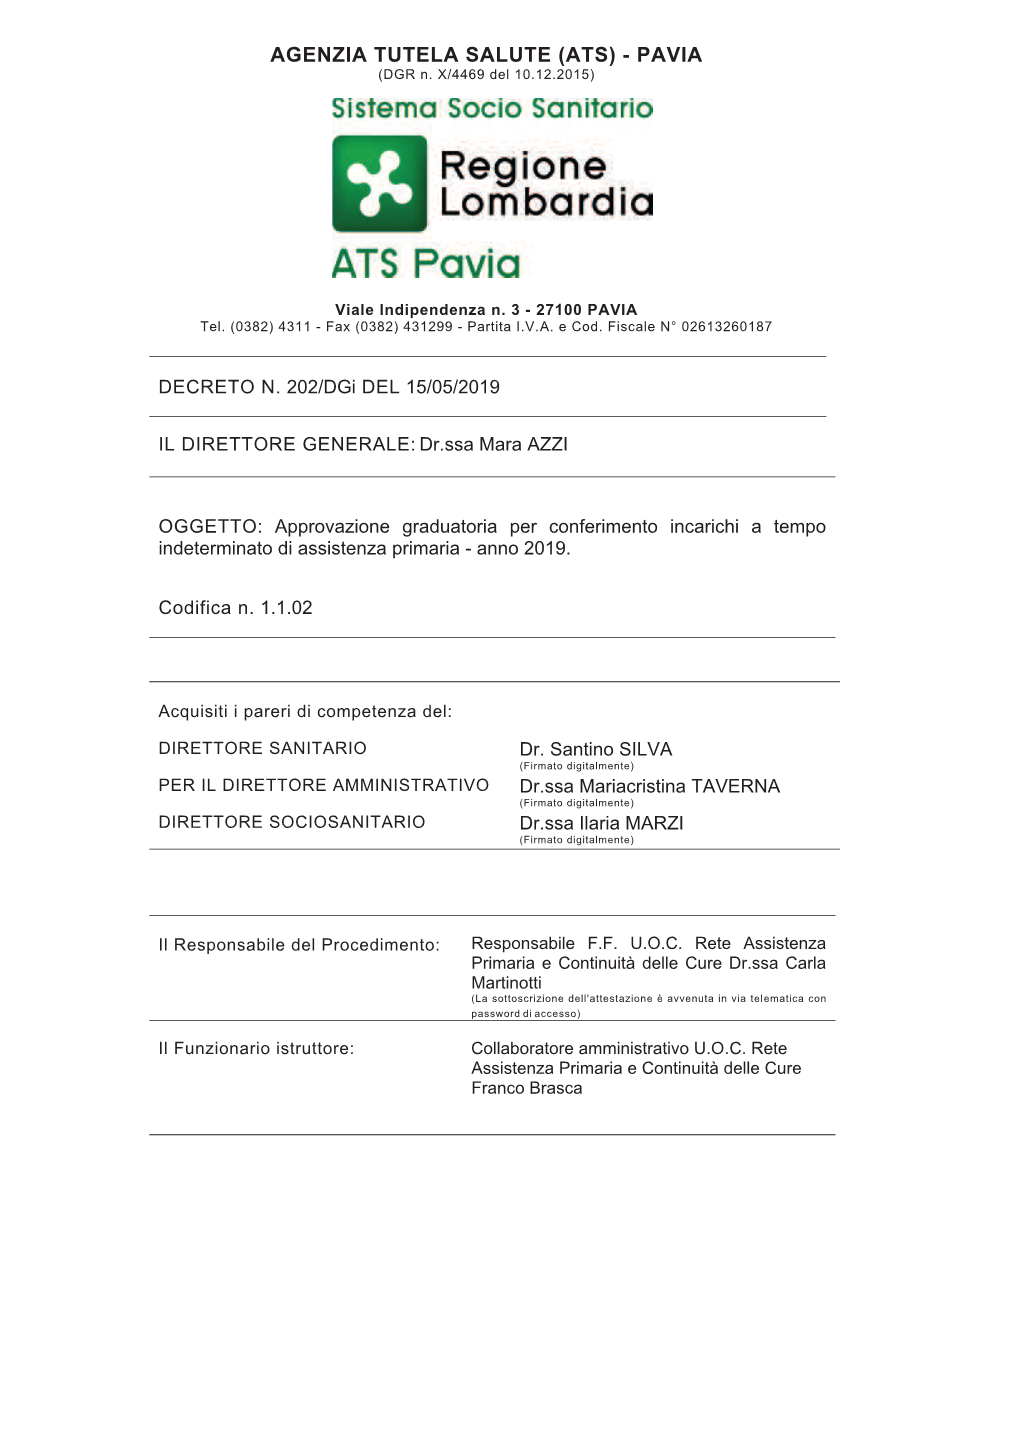 AGENZIA TUTELA SALUTE (ATS) - PAVIA (DGR N